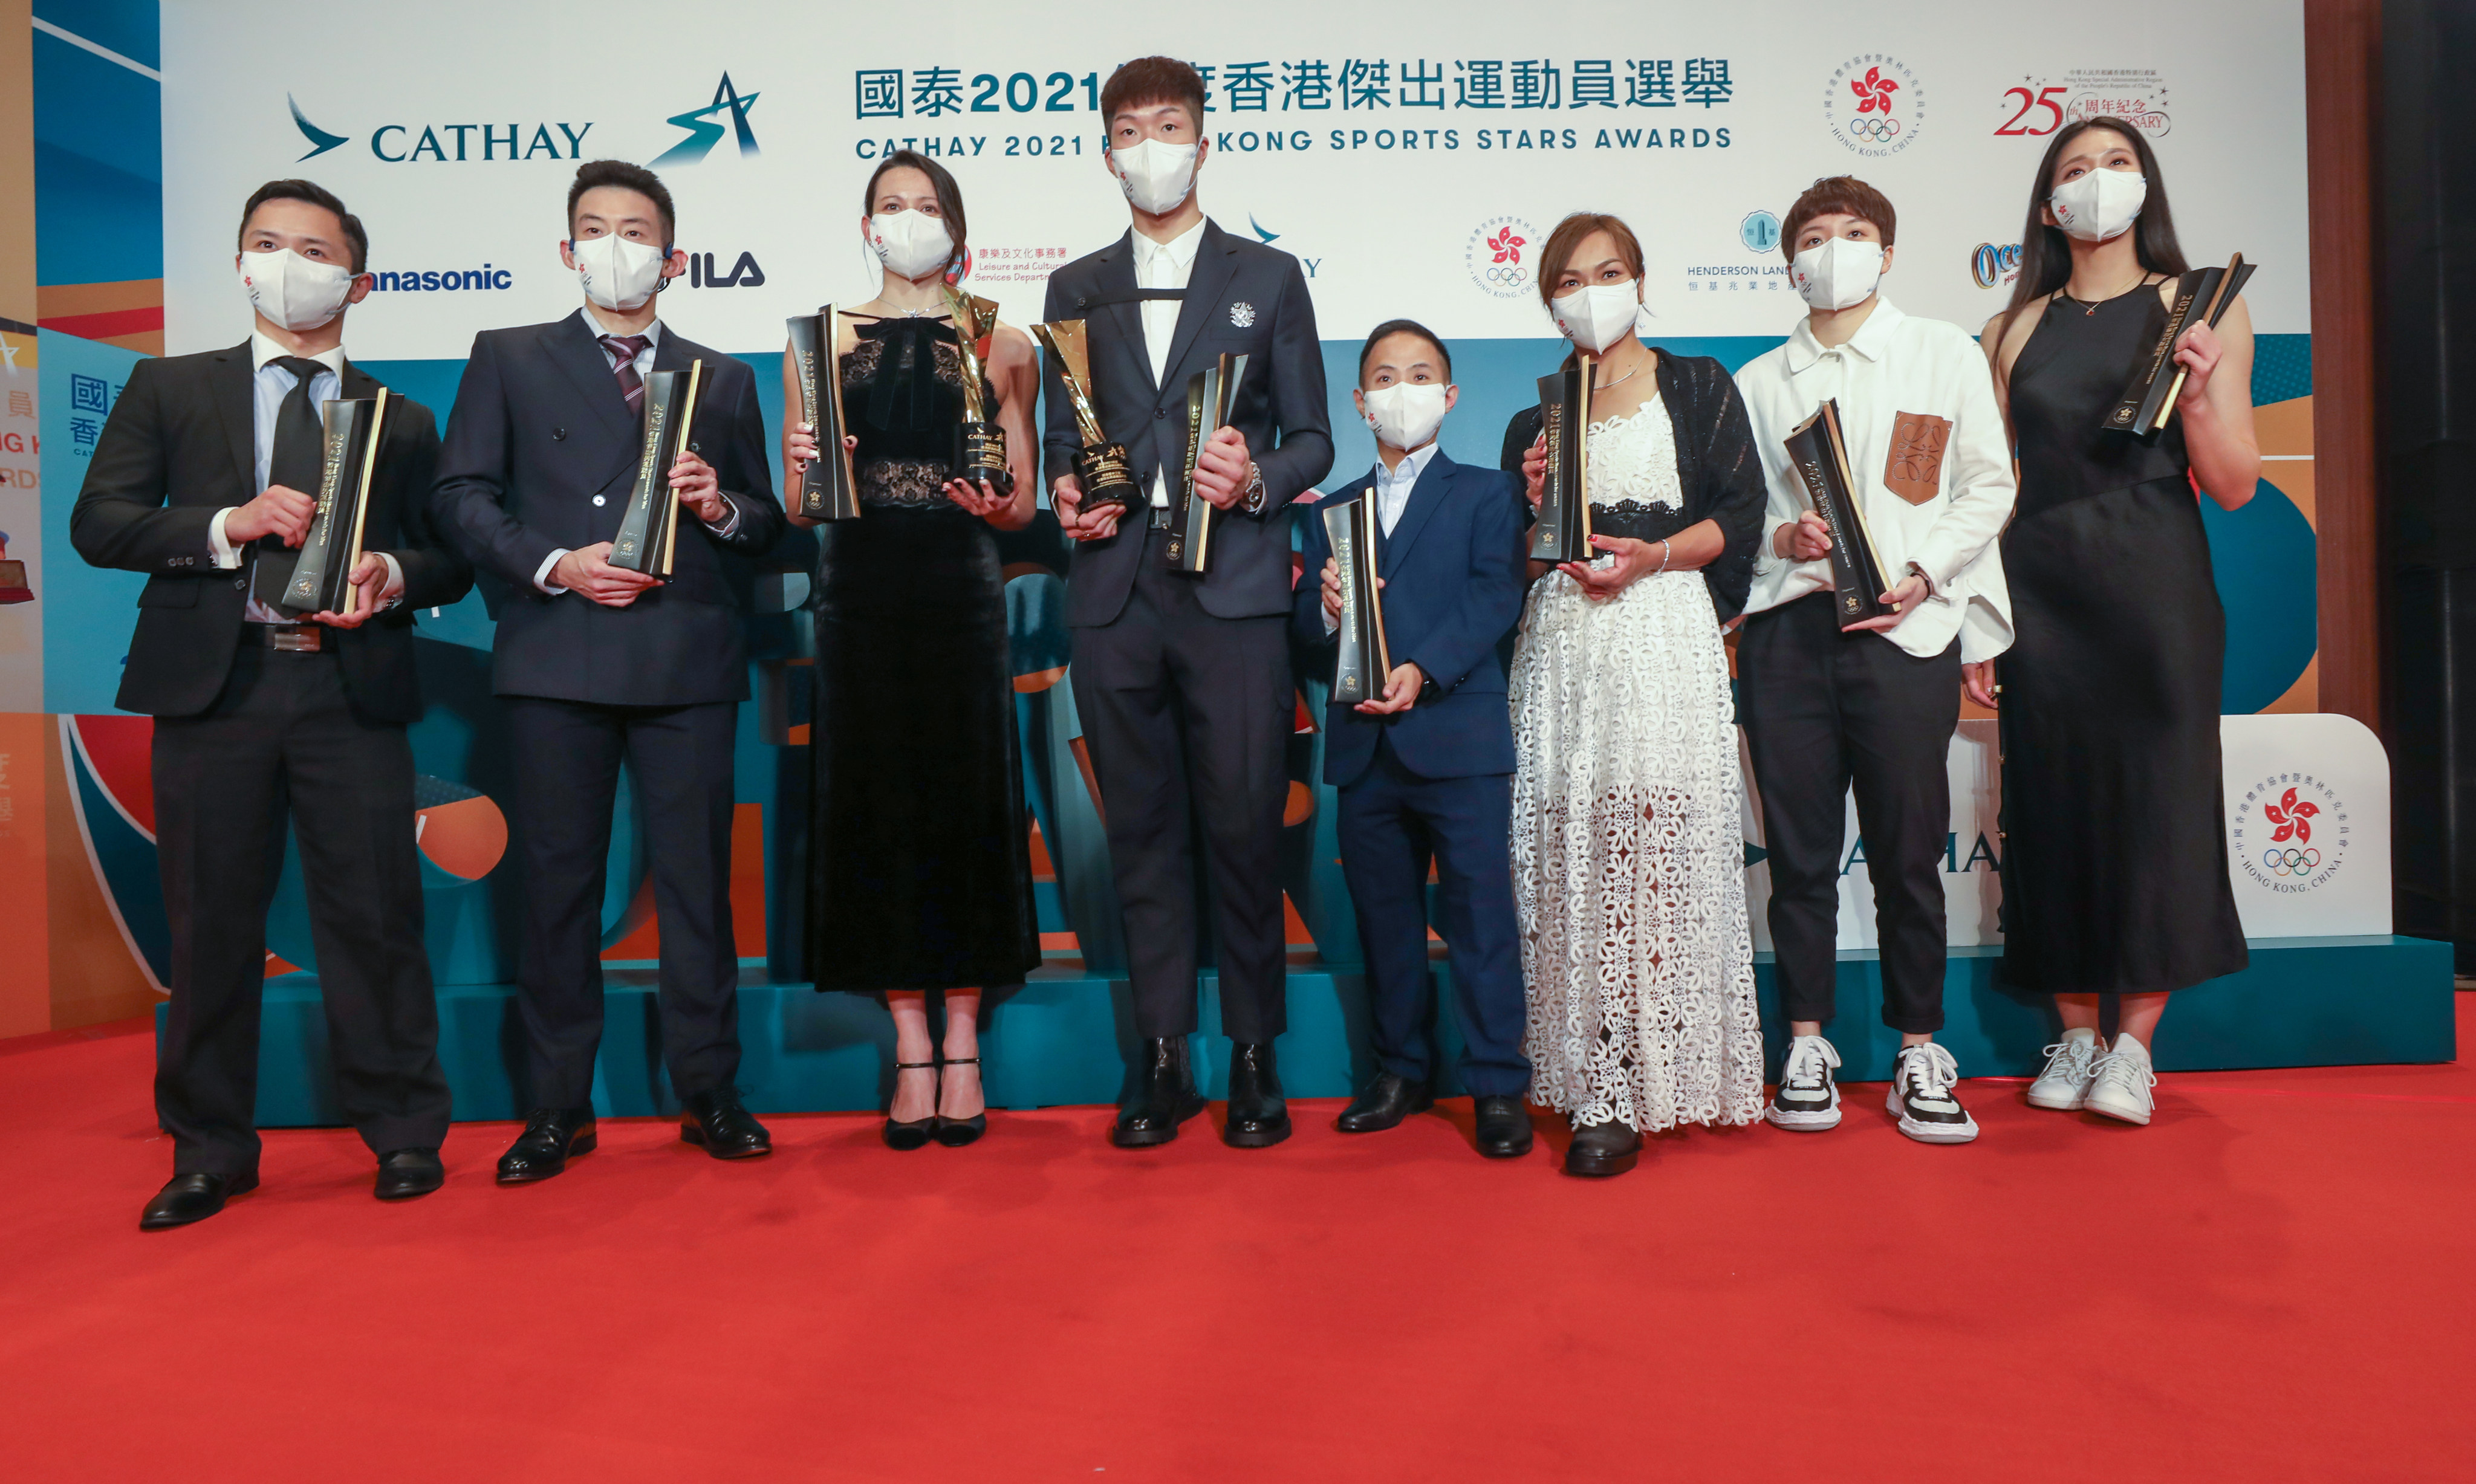 Sports Stars Awards winners (from left) Lau Chi-ming (karate), Wong Chun-ting (table tennis), Siobhan Haughey (swimming), Cheung Ka-long (fencing), Chu Man-kai (para-badminton), Sarah Lee Wai-sze (cycling), Doo Hoi-kem (table tennis) and Vivian Kong Man-wai (fencing). Photo: Xiaomei Chen